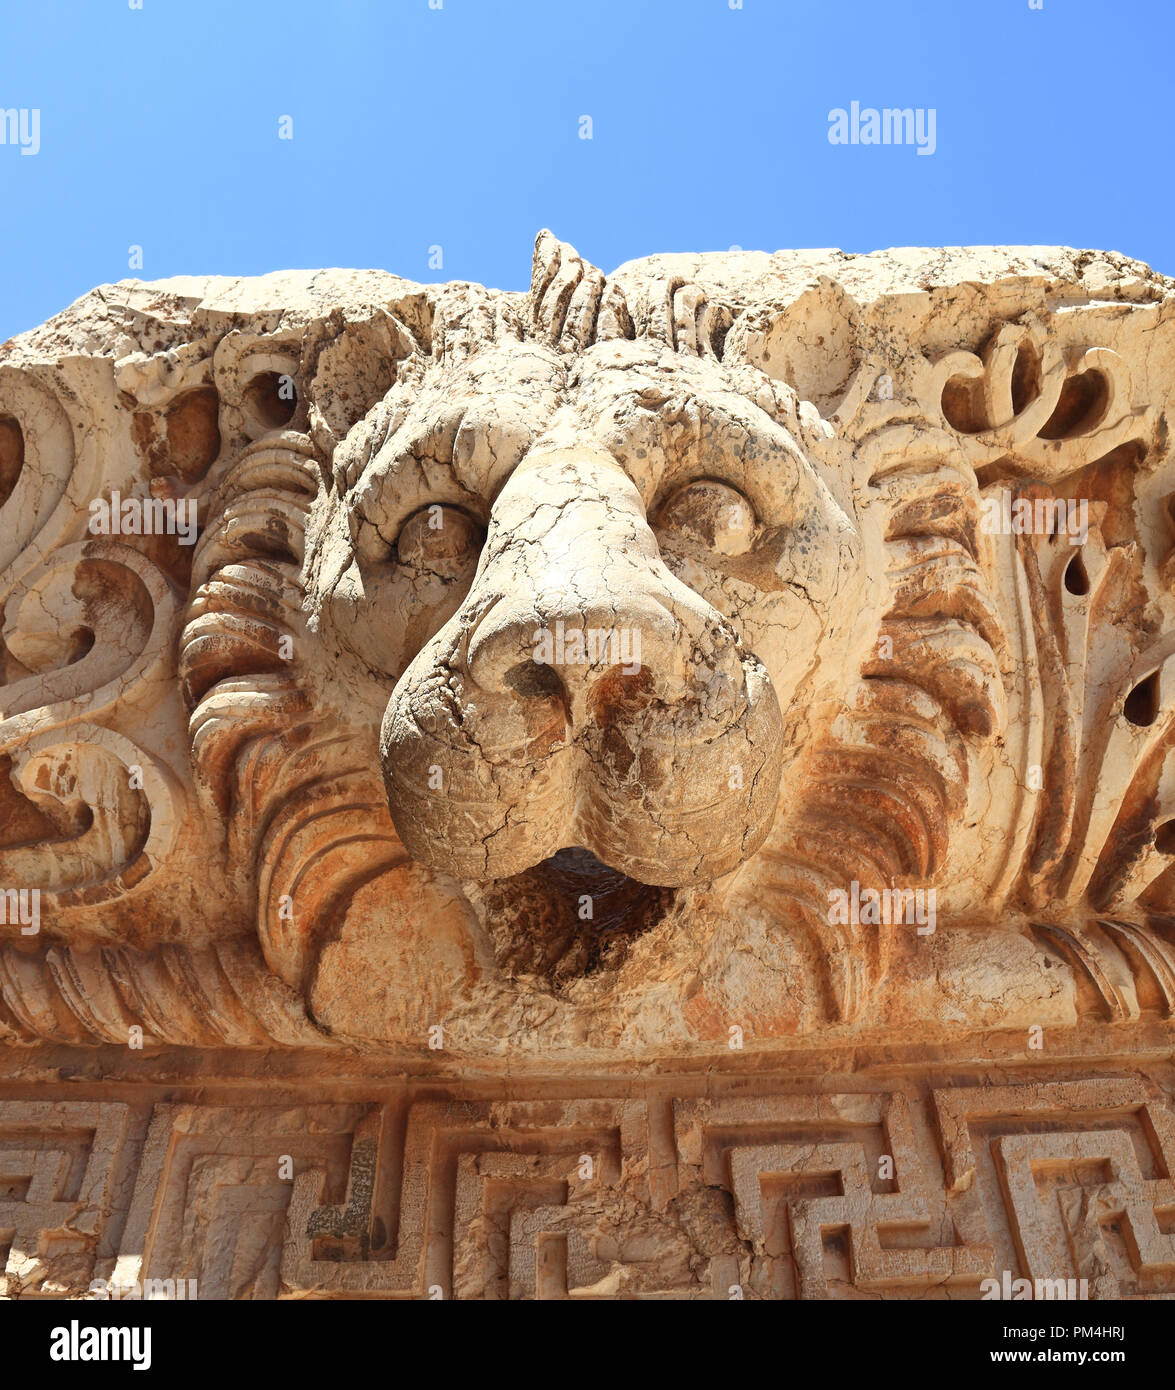 Ruines Romaines de Baalbek au Liban, Lion's Head Banque D'Images